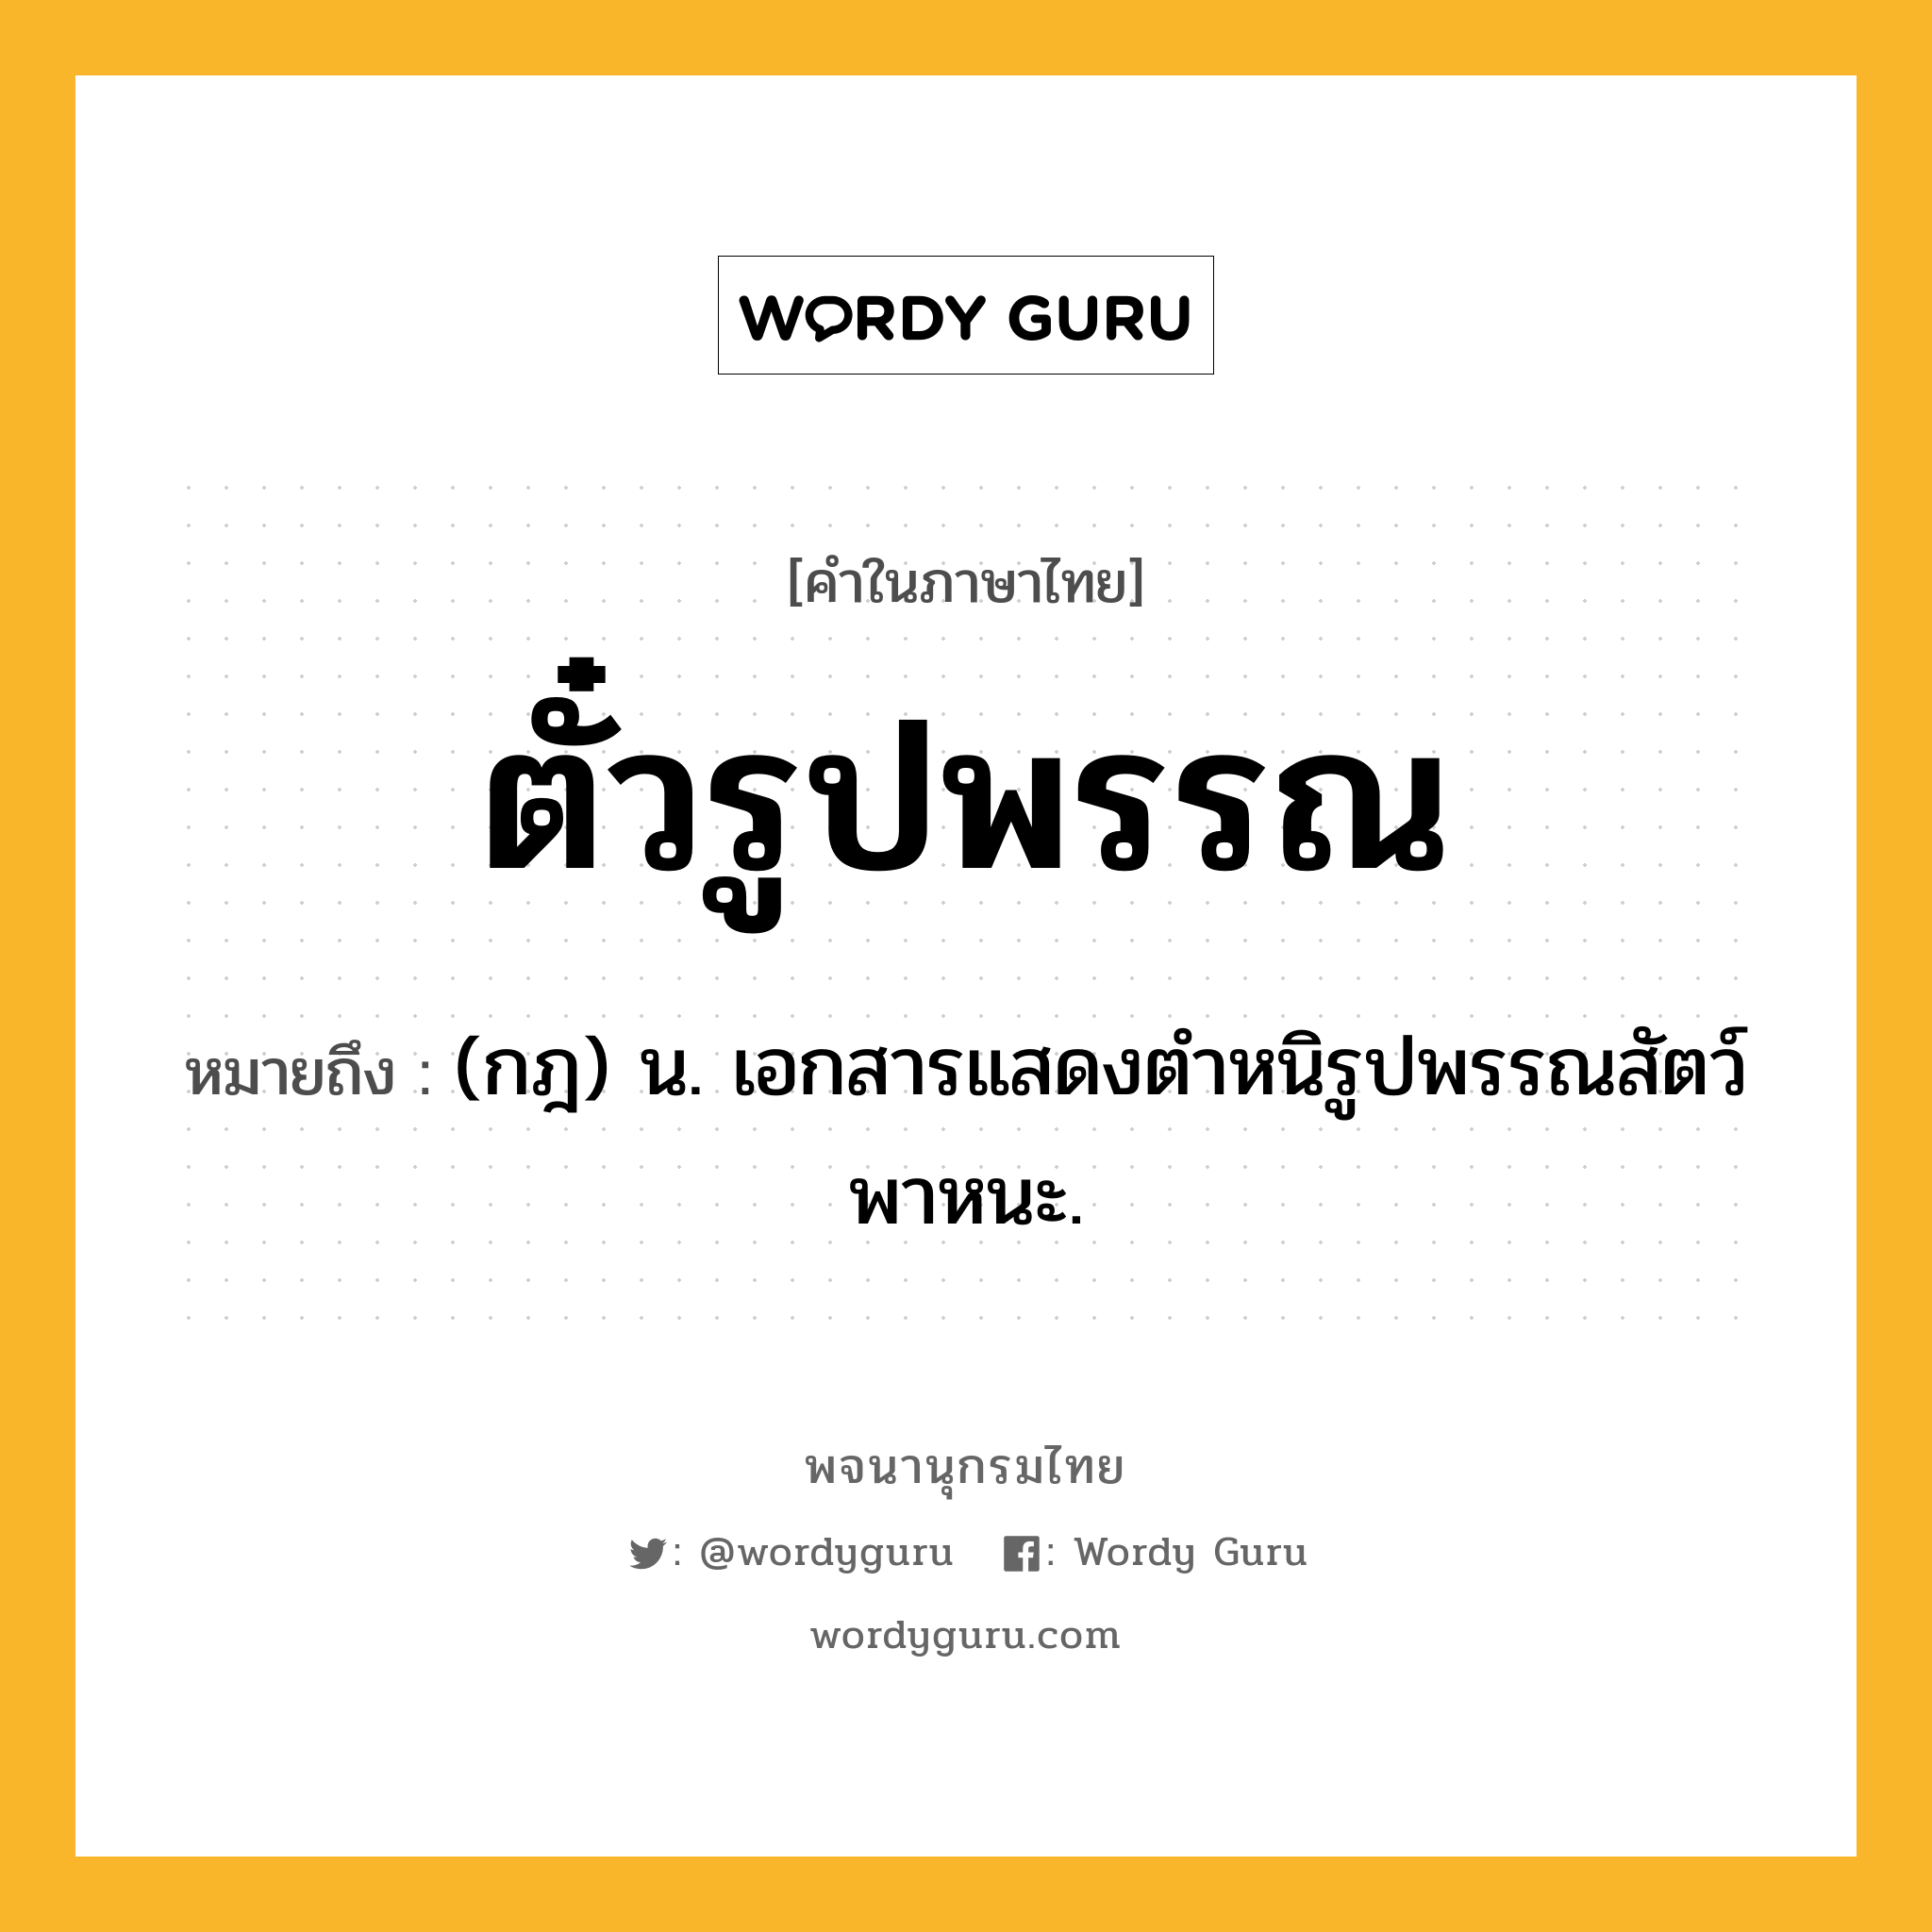 ตั๋วรูปพรรณ หมายถึงอะไร?, คำในภาษาไทย ตั๋วรูปพรรณ หมายถึง (กฎ) น. เอกสารแสดงตำหนิรูปพรรณสัตว์พาหนะ.